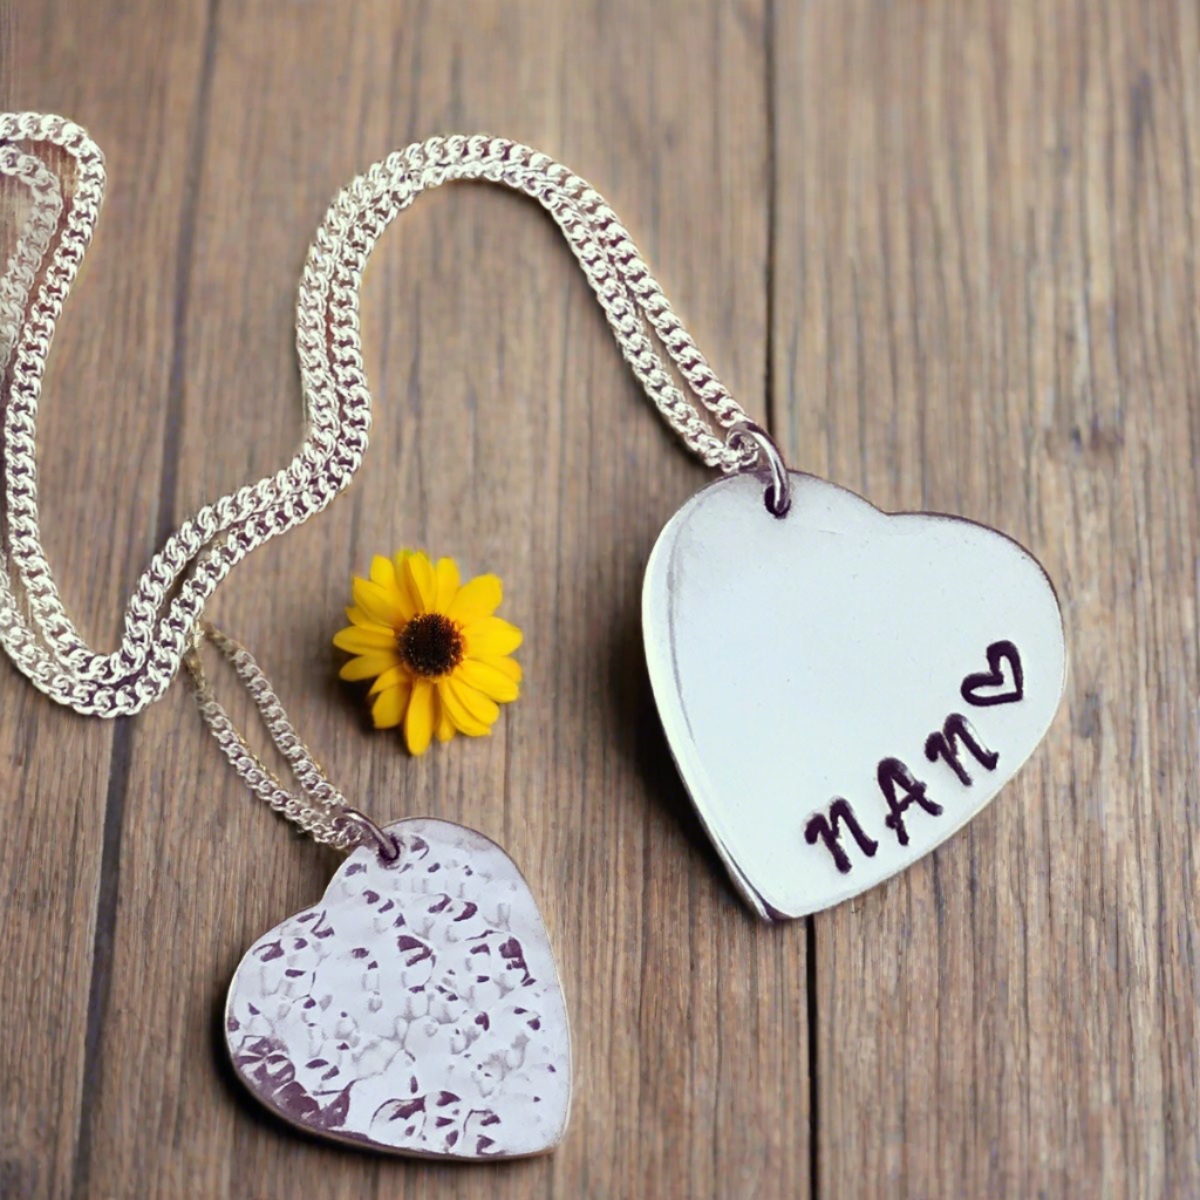 Gift for Nan, Grift for grandmother, heart pendant. beaten heart pendant for nan or grandmother